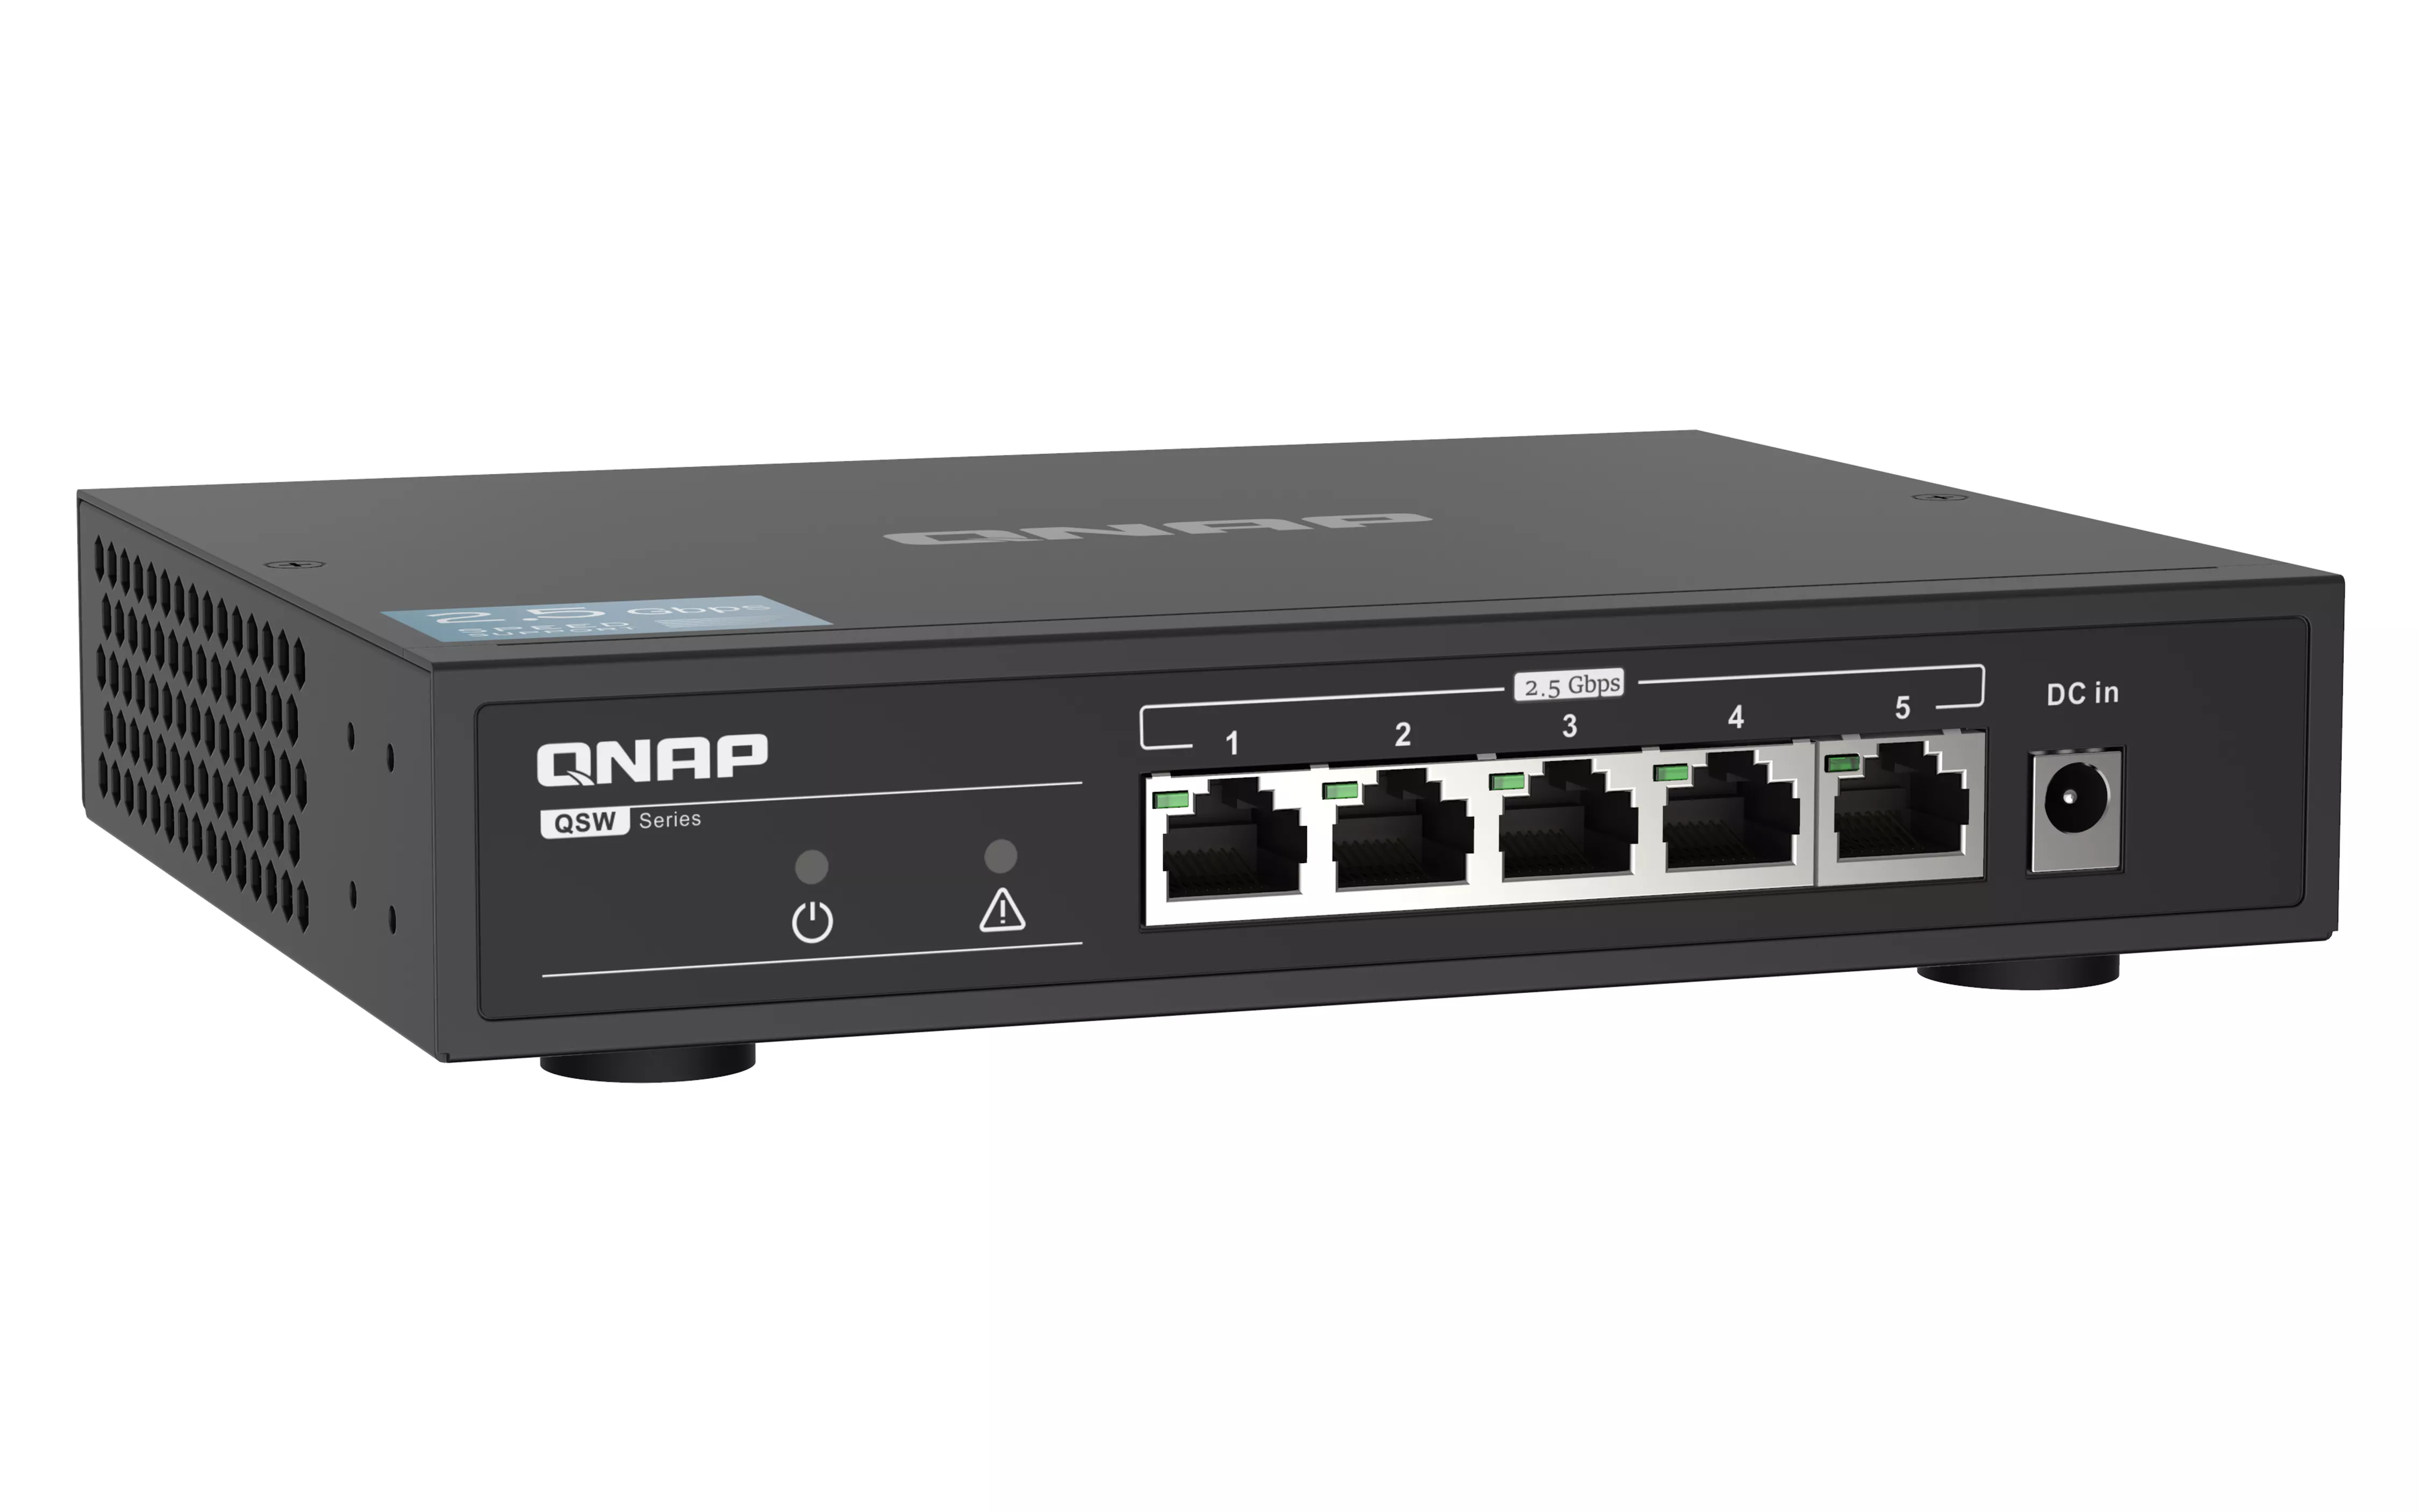 Vente QNAP QSW-1105-5T 5 port 2.5Gbps auto negotiation 2 QNAP au meilleur prix - visuel 4